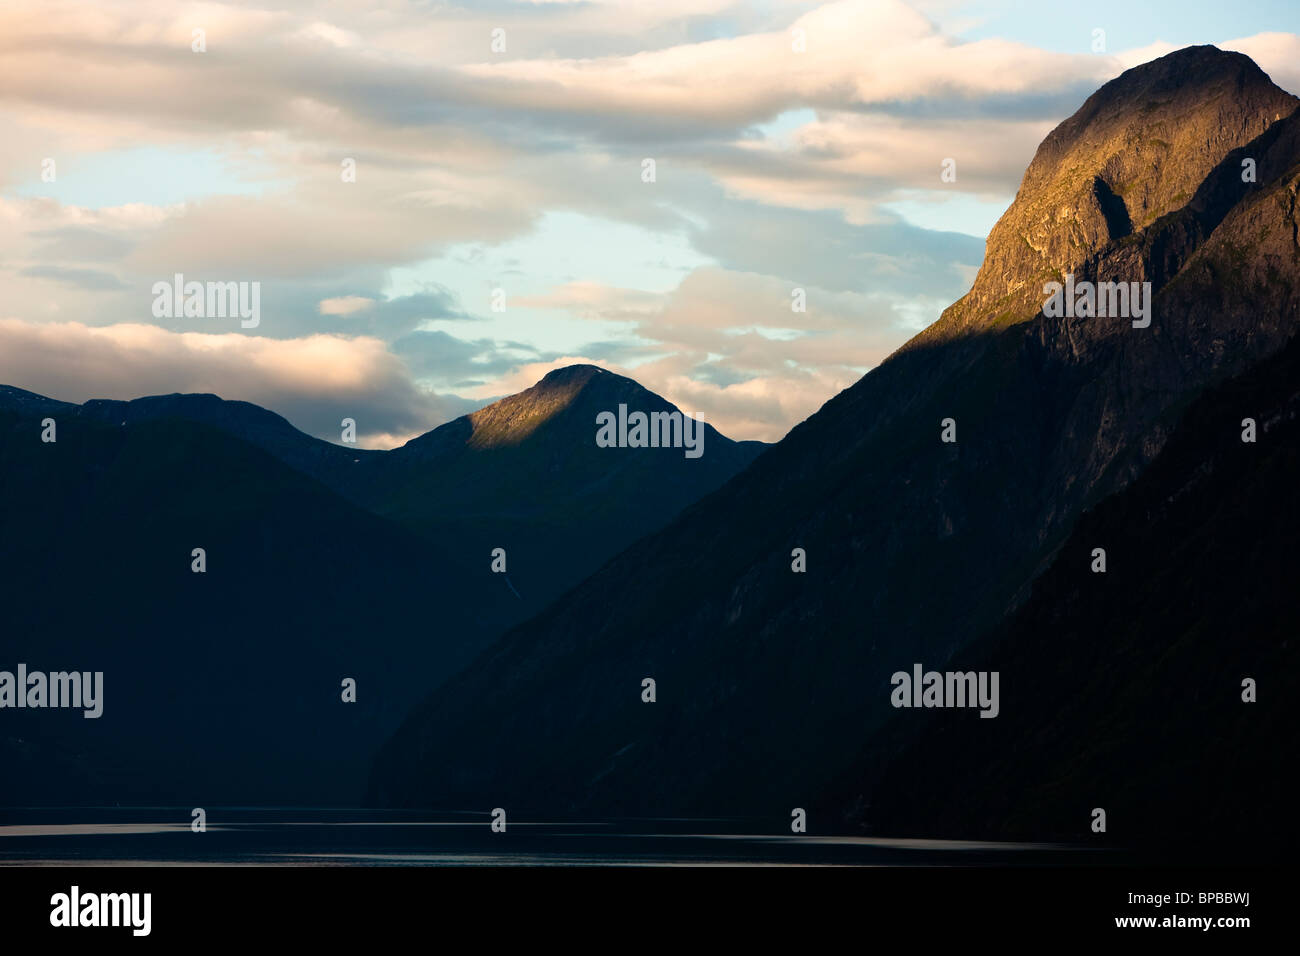 Norwegen-Stranda Sunnylvsfjord Fjord ruhige ruhige friedliche Granit Vorahnung Landschaft Textfreiraum Stockfoto